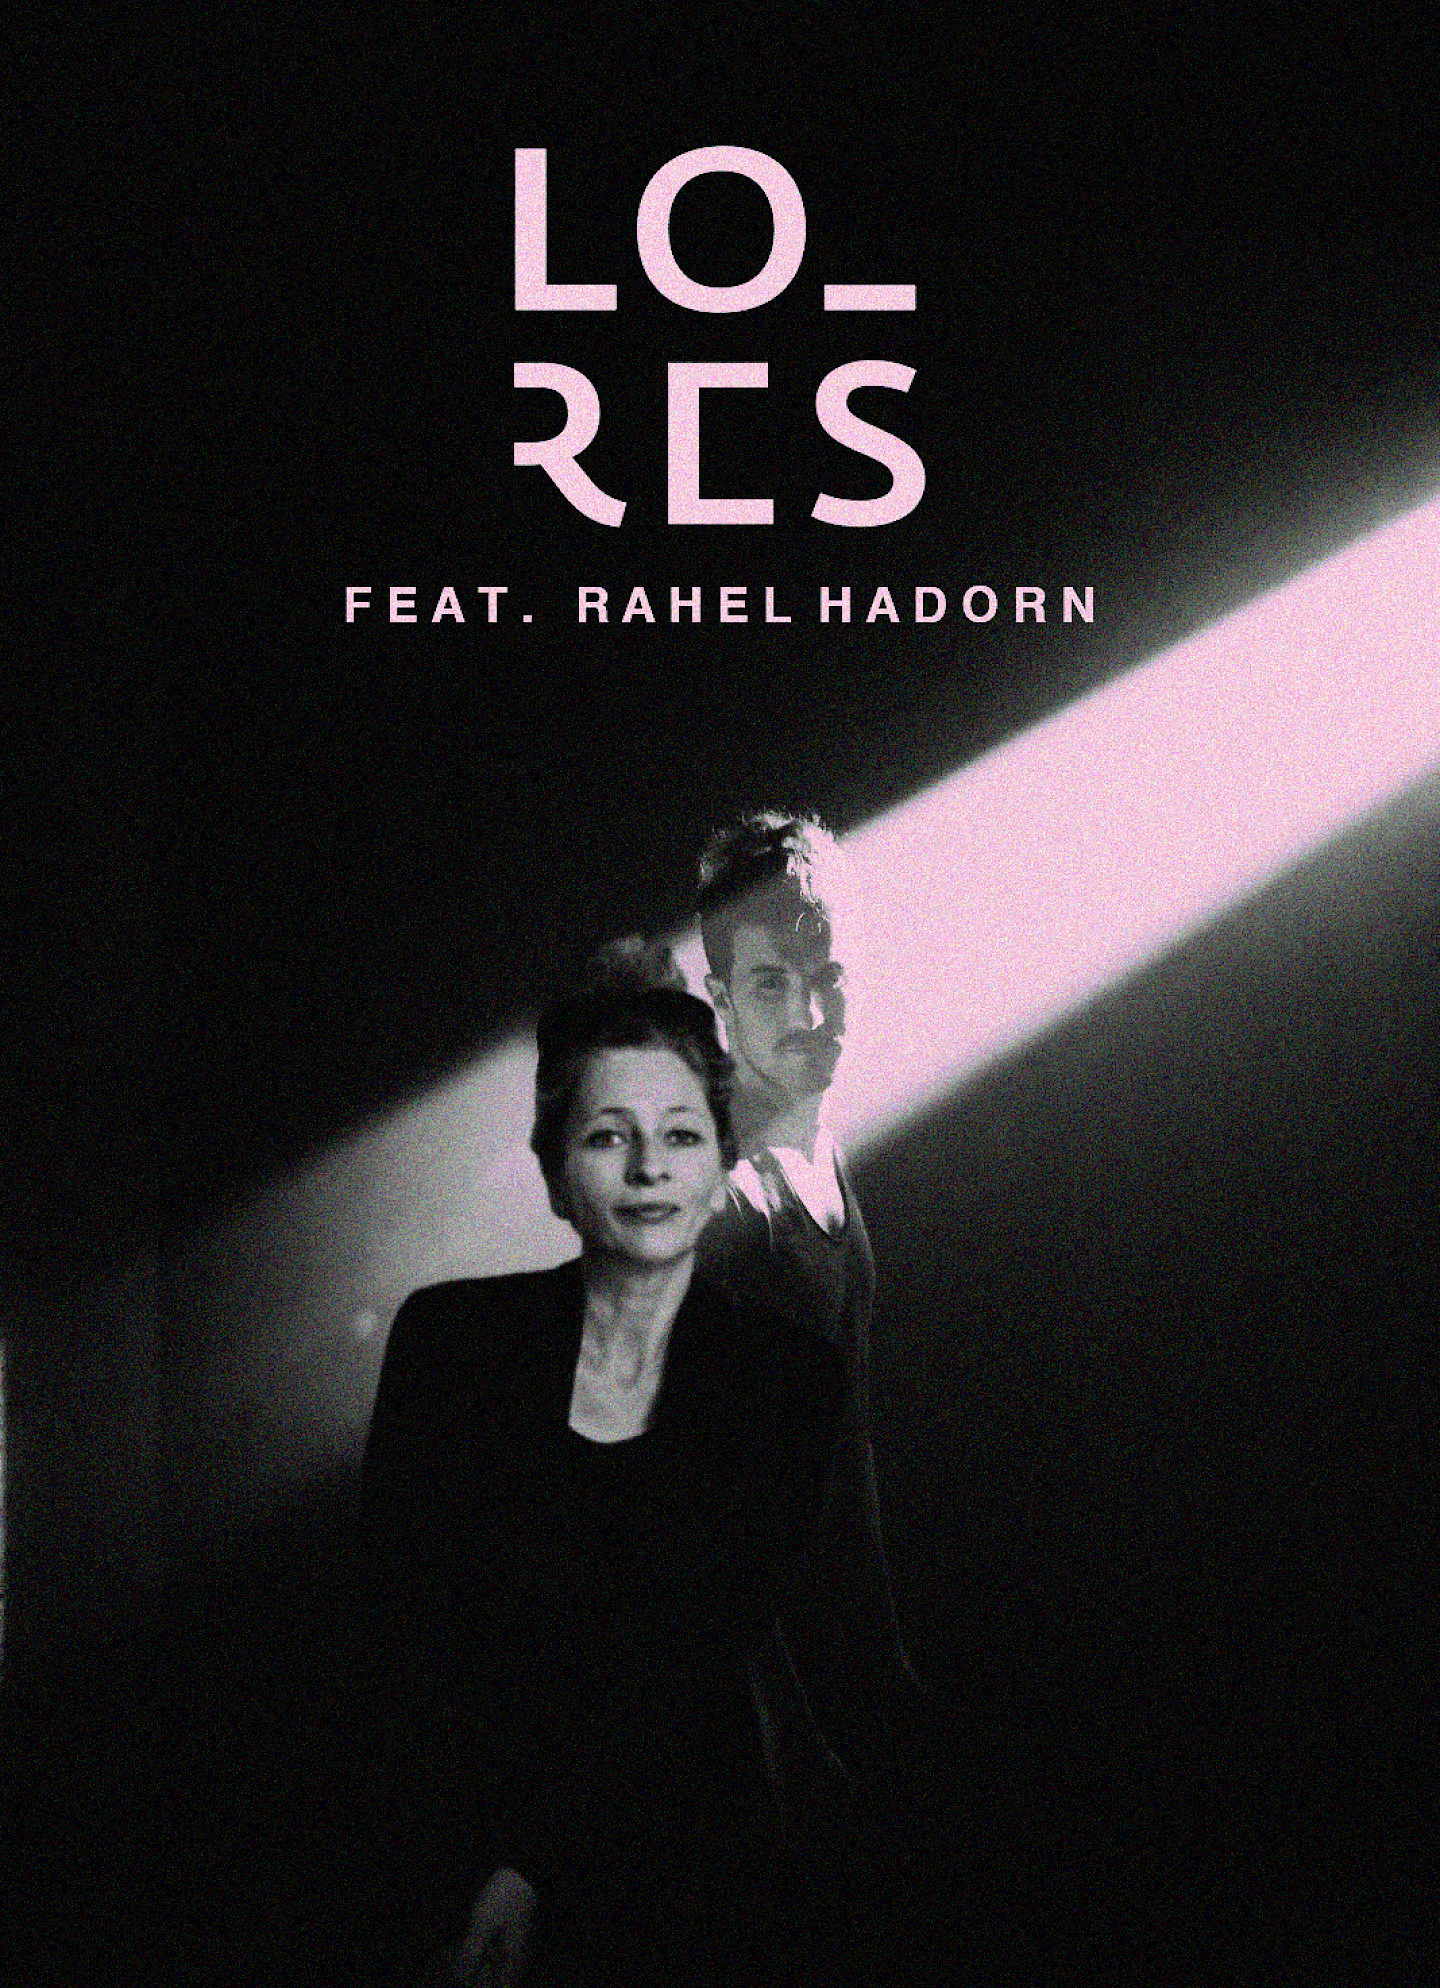 LO_RES feat. Rahel Hadorn